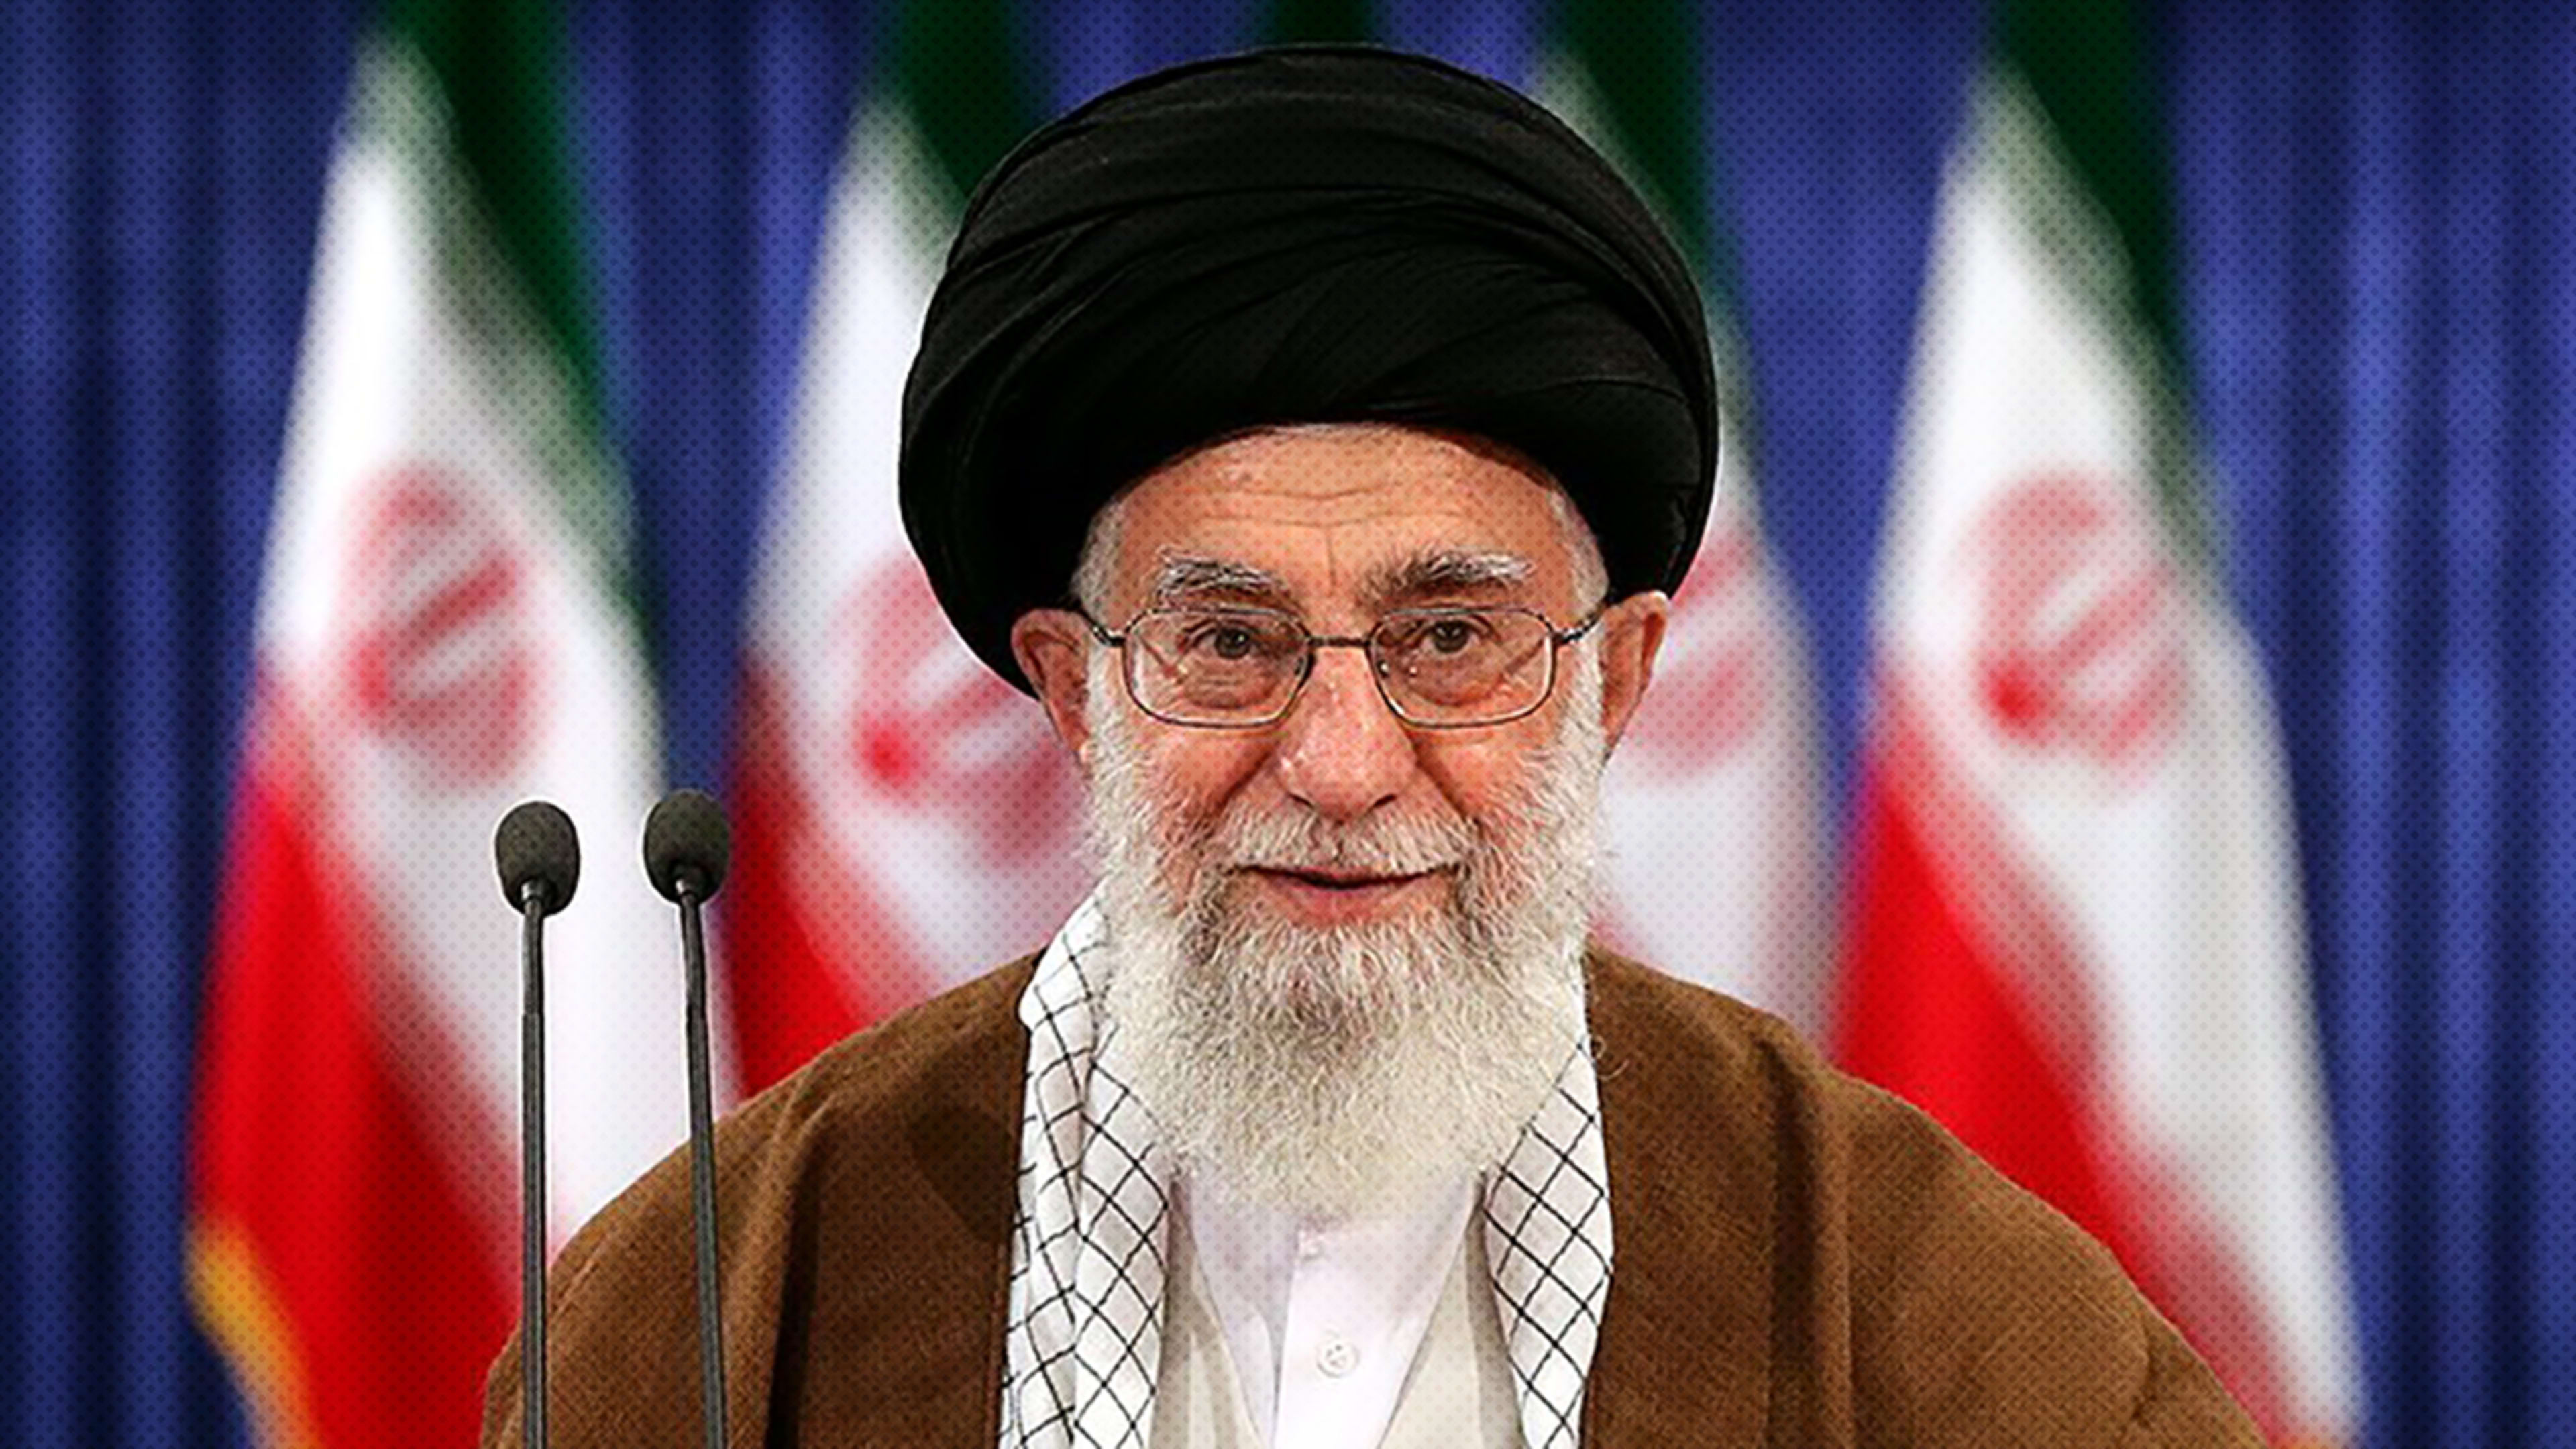 Why won’t Twitter suspend Iran’s Supreme Leader after threatening tweet?